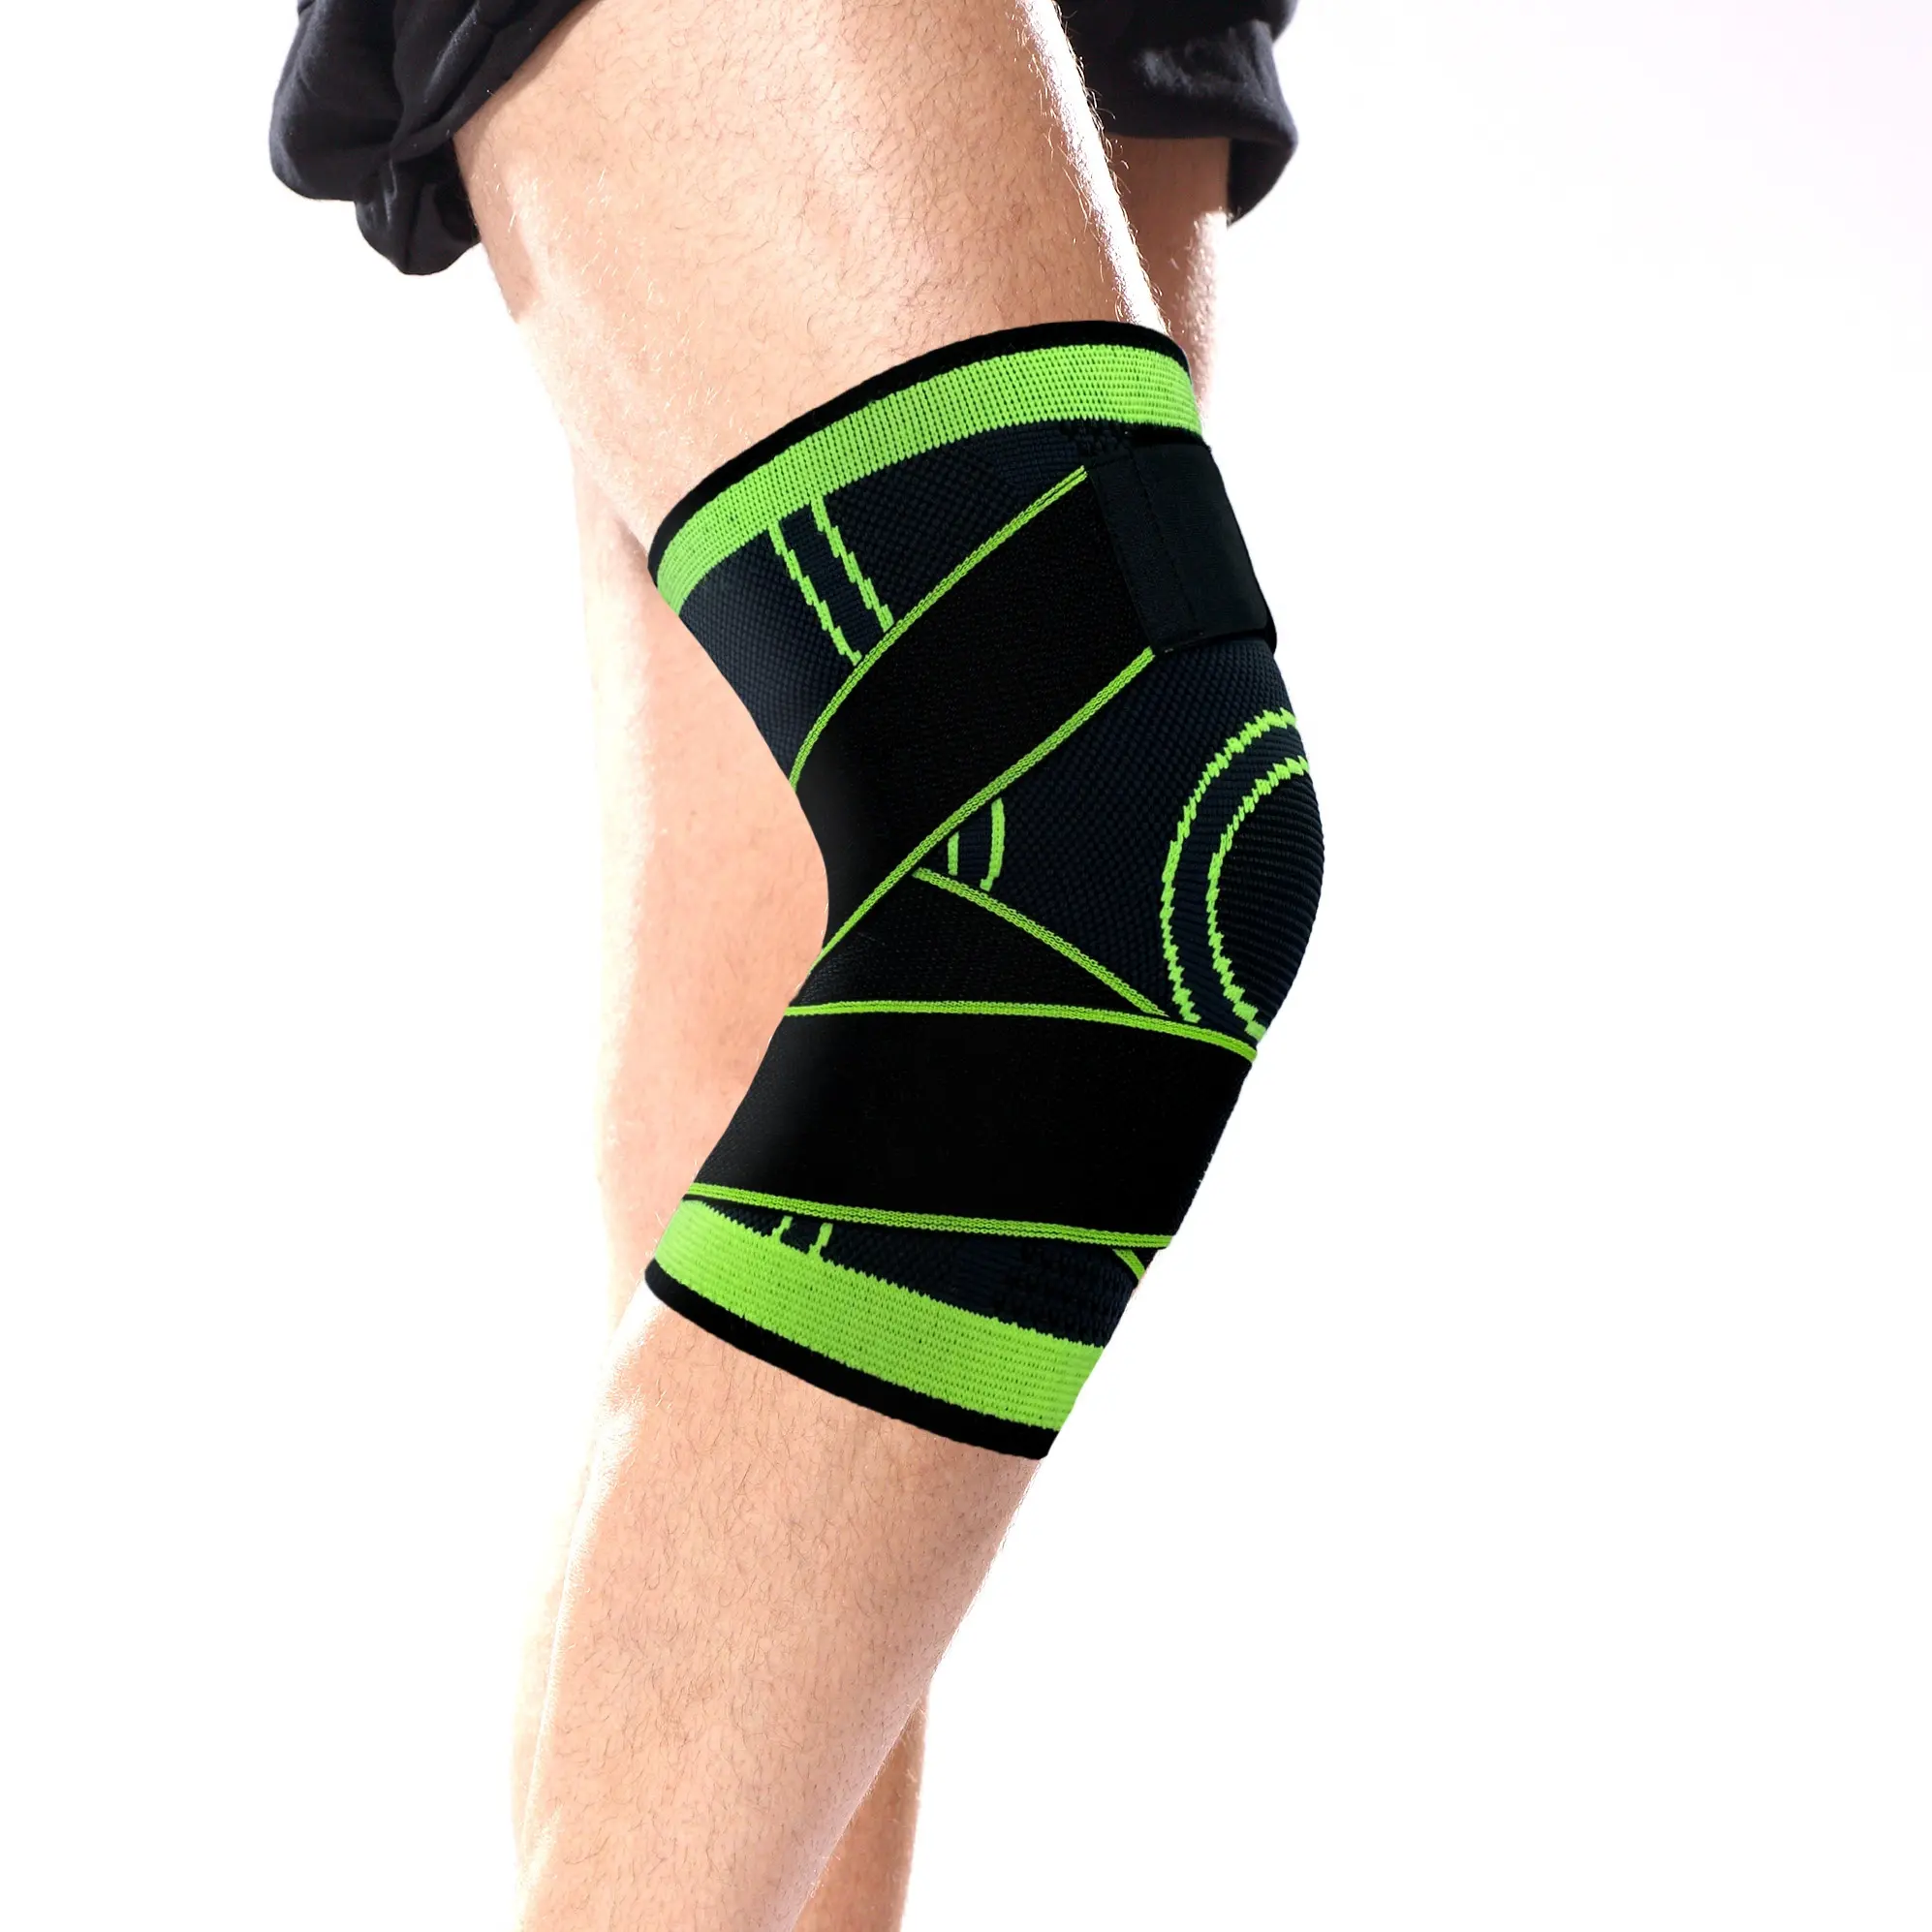 Migliore per l'esecuzione di amazon lavorato a maglia al ginocchio di compressione a manica ginocchio brace